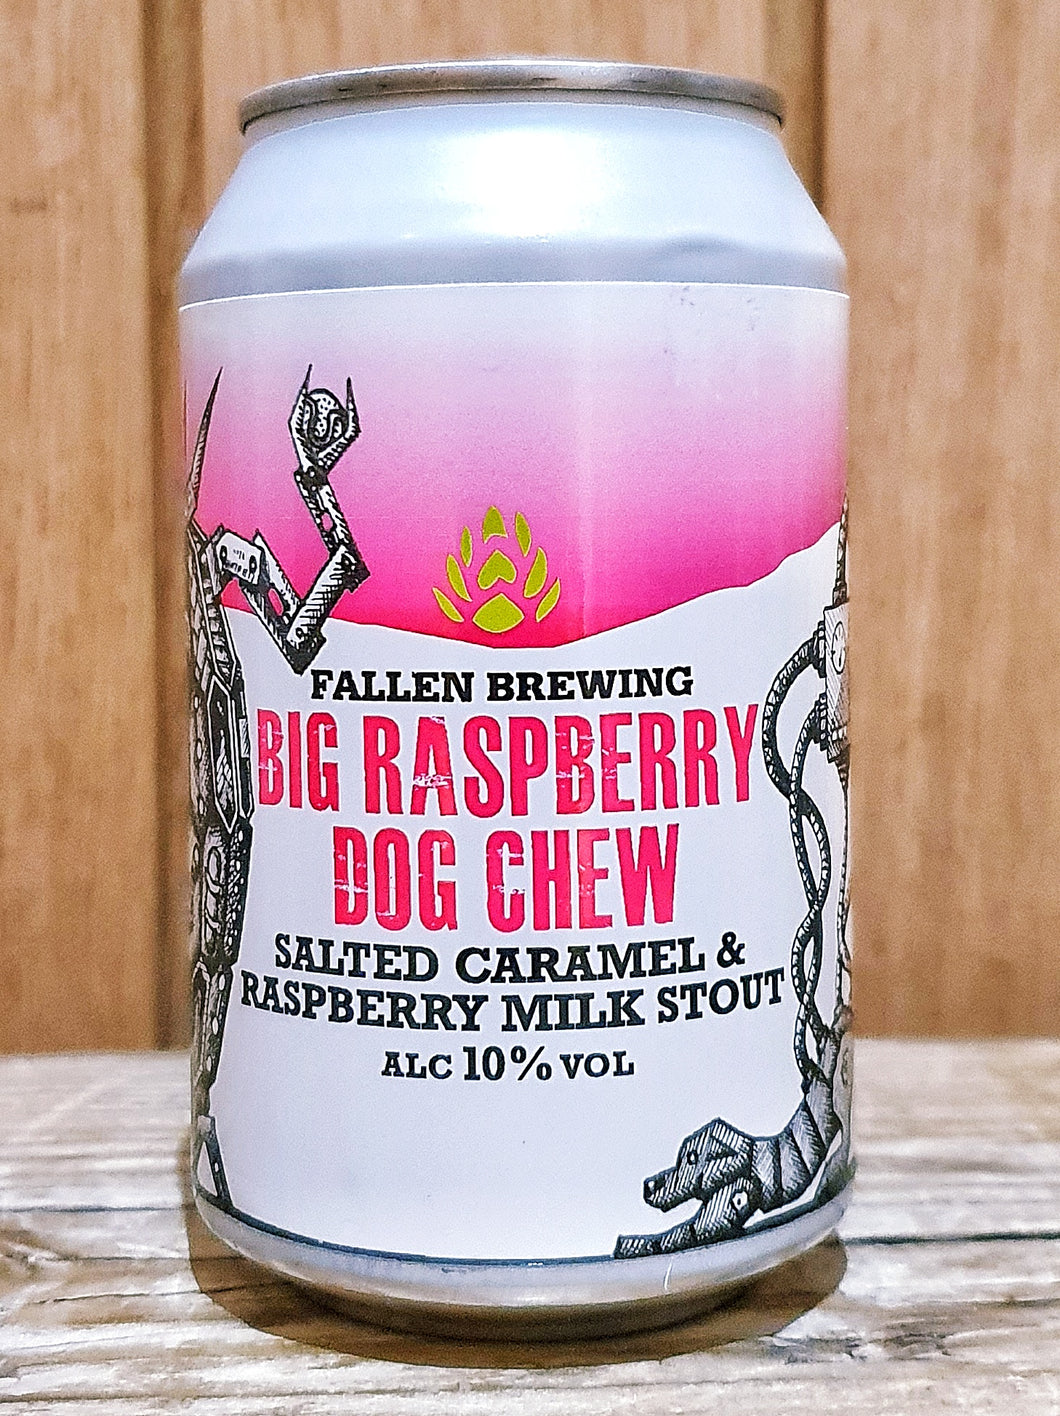 Fallen Brewing - Big Raspberry Dog Chew